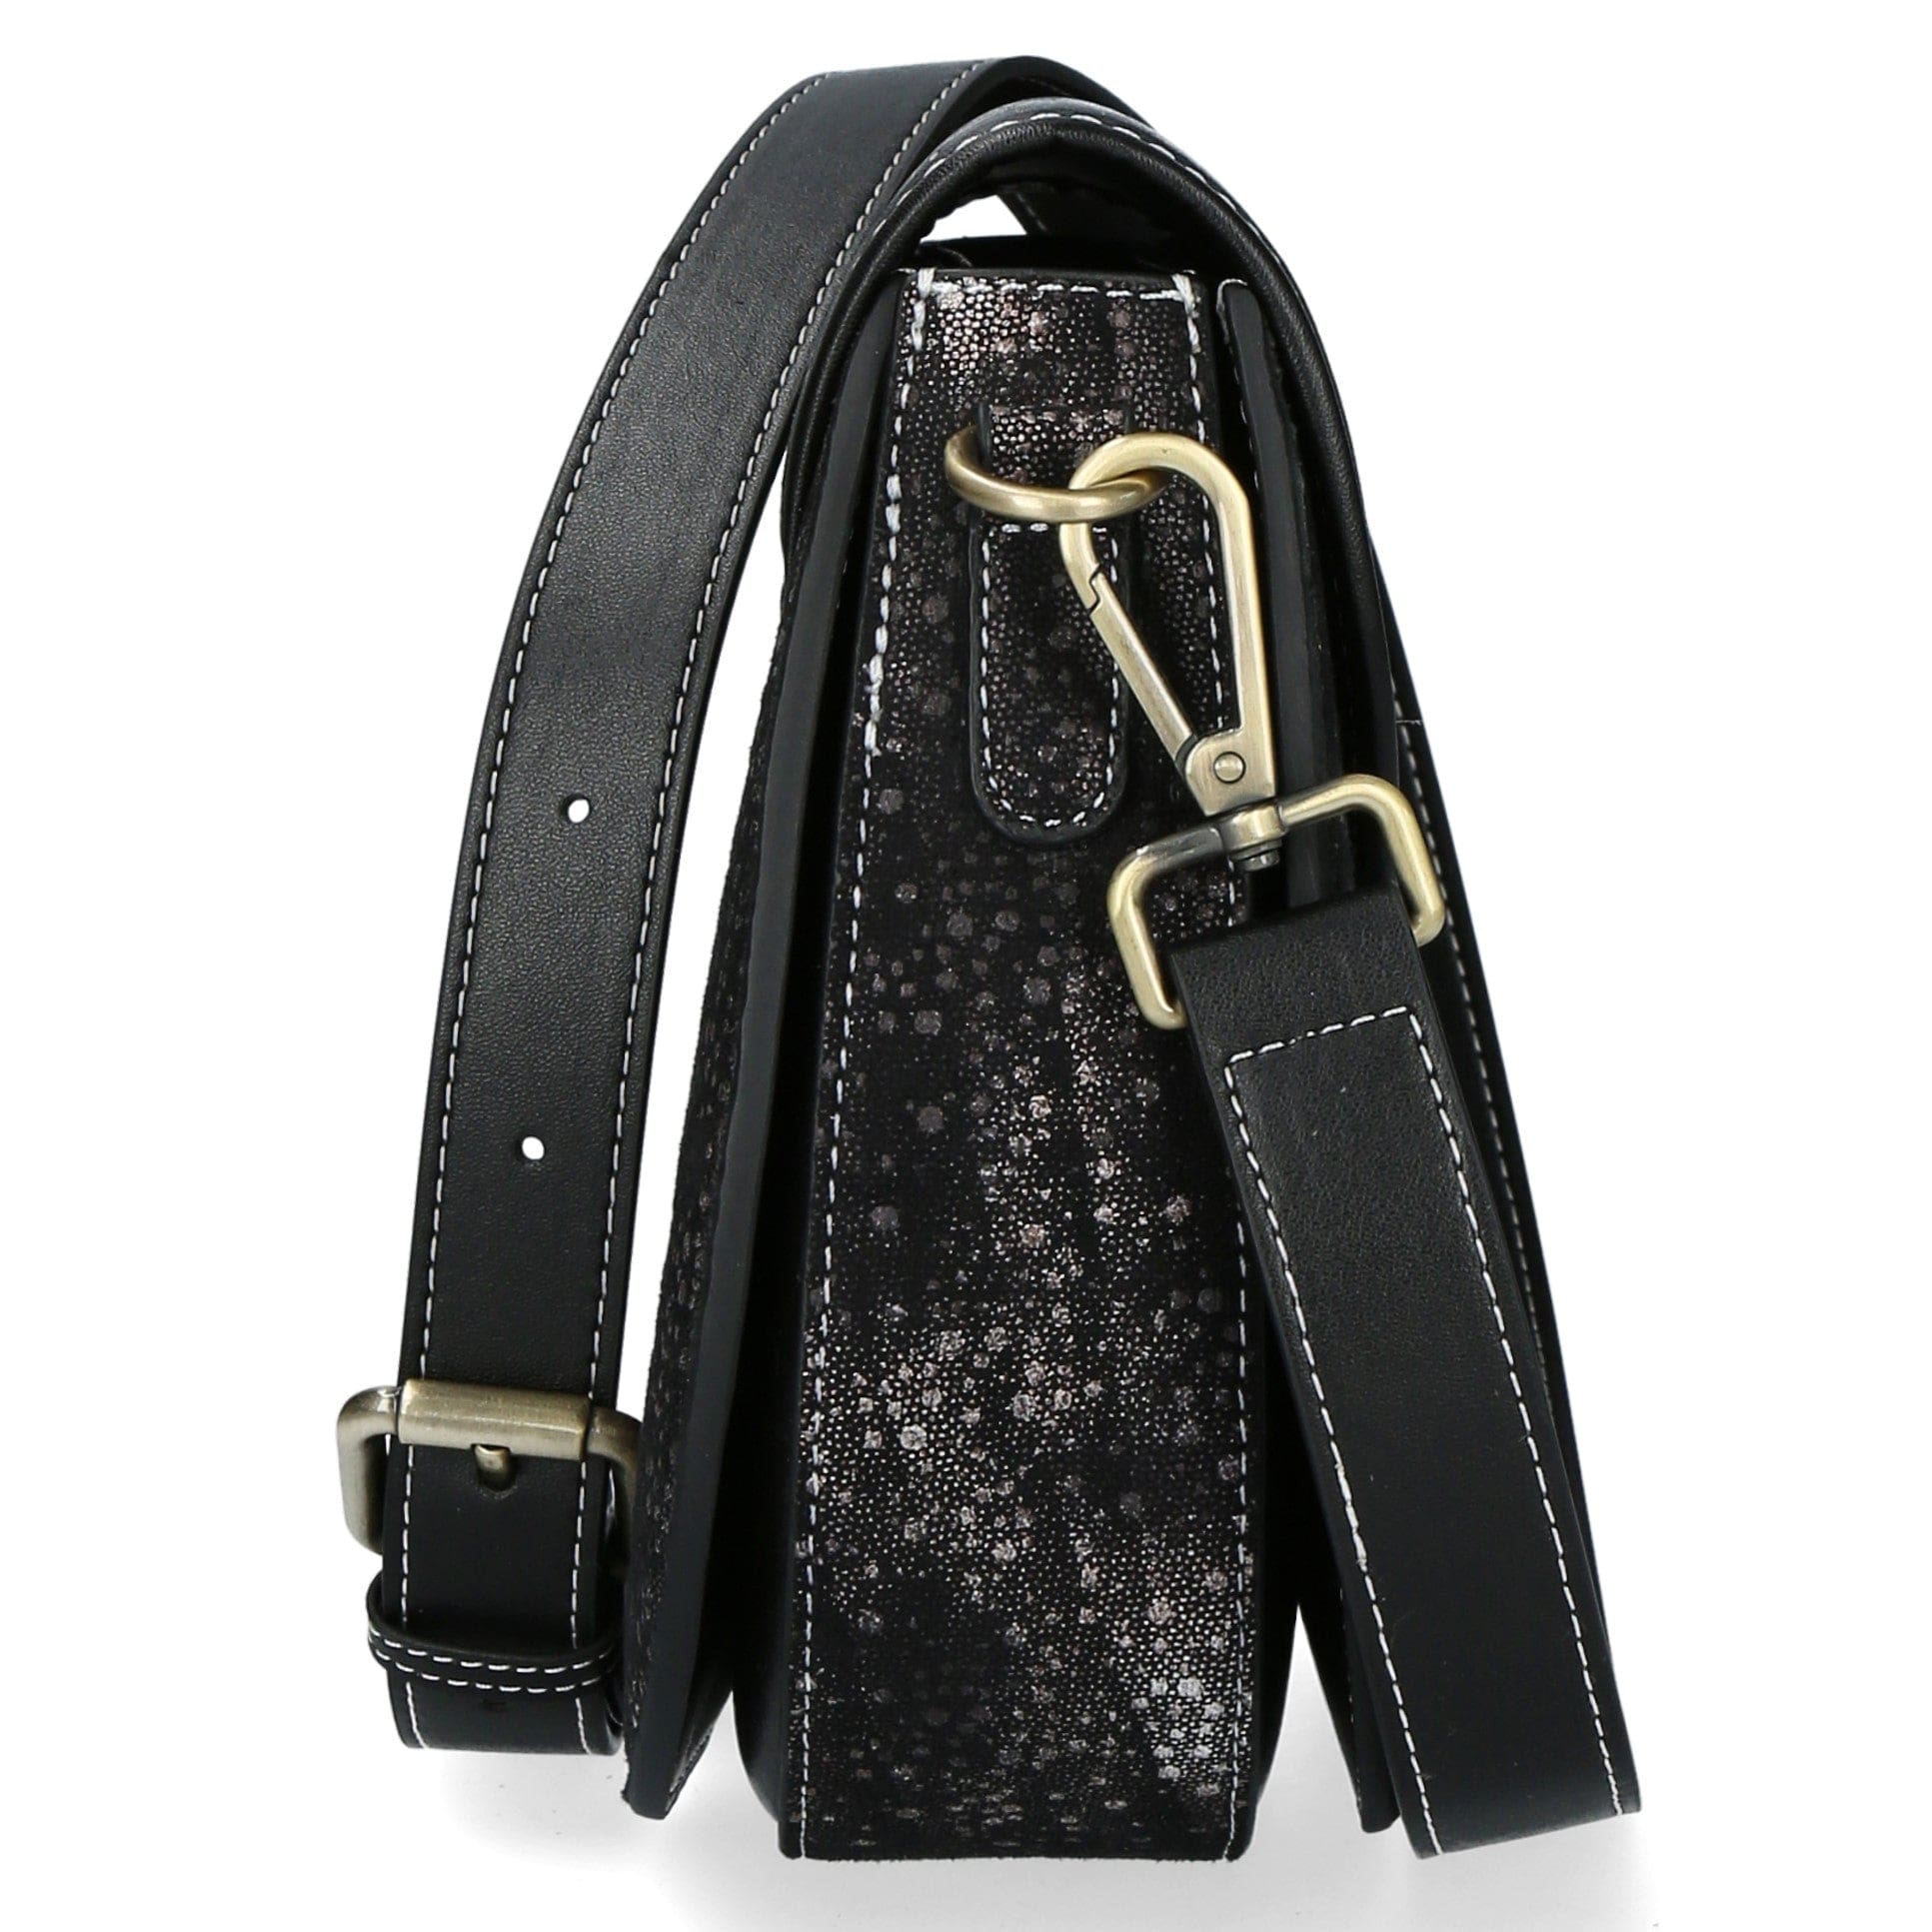 Taschen Handtasche Leder 4504K - Grau - Taschen